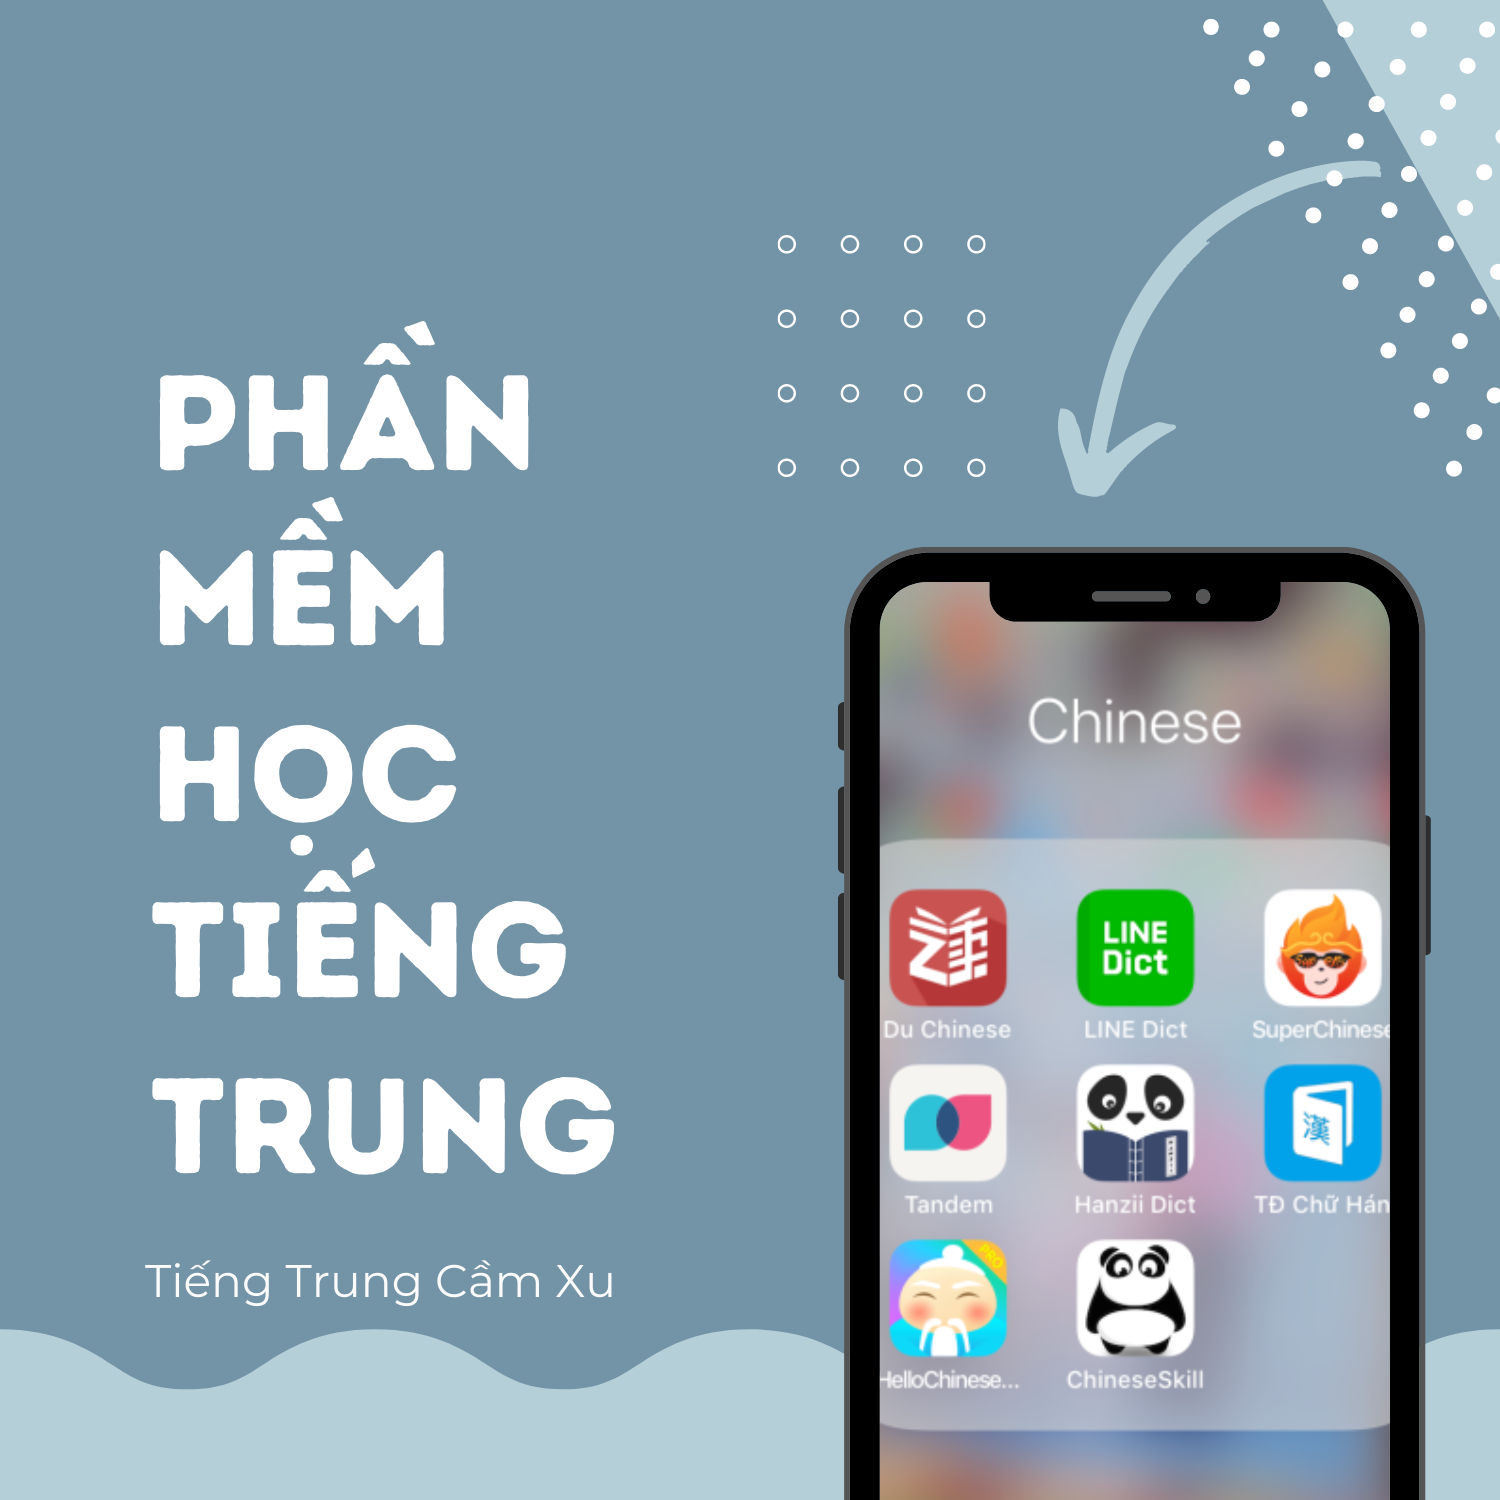 Review 10 phần mềm học Tiếng Trung hot nhất hiện nay - Tiếng Trung Cầm Xu - Khoá học tiếng Trung